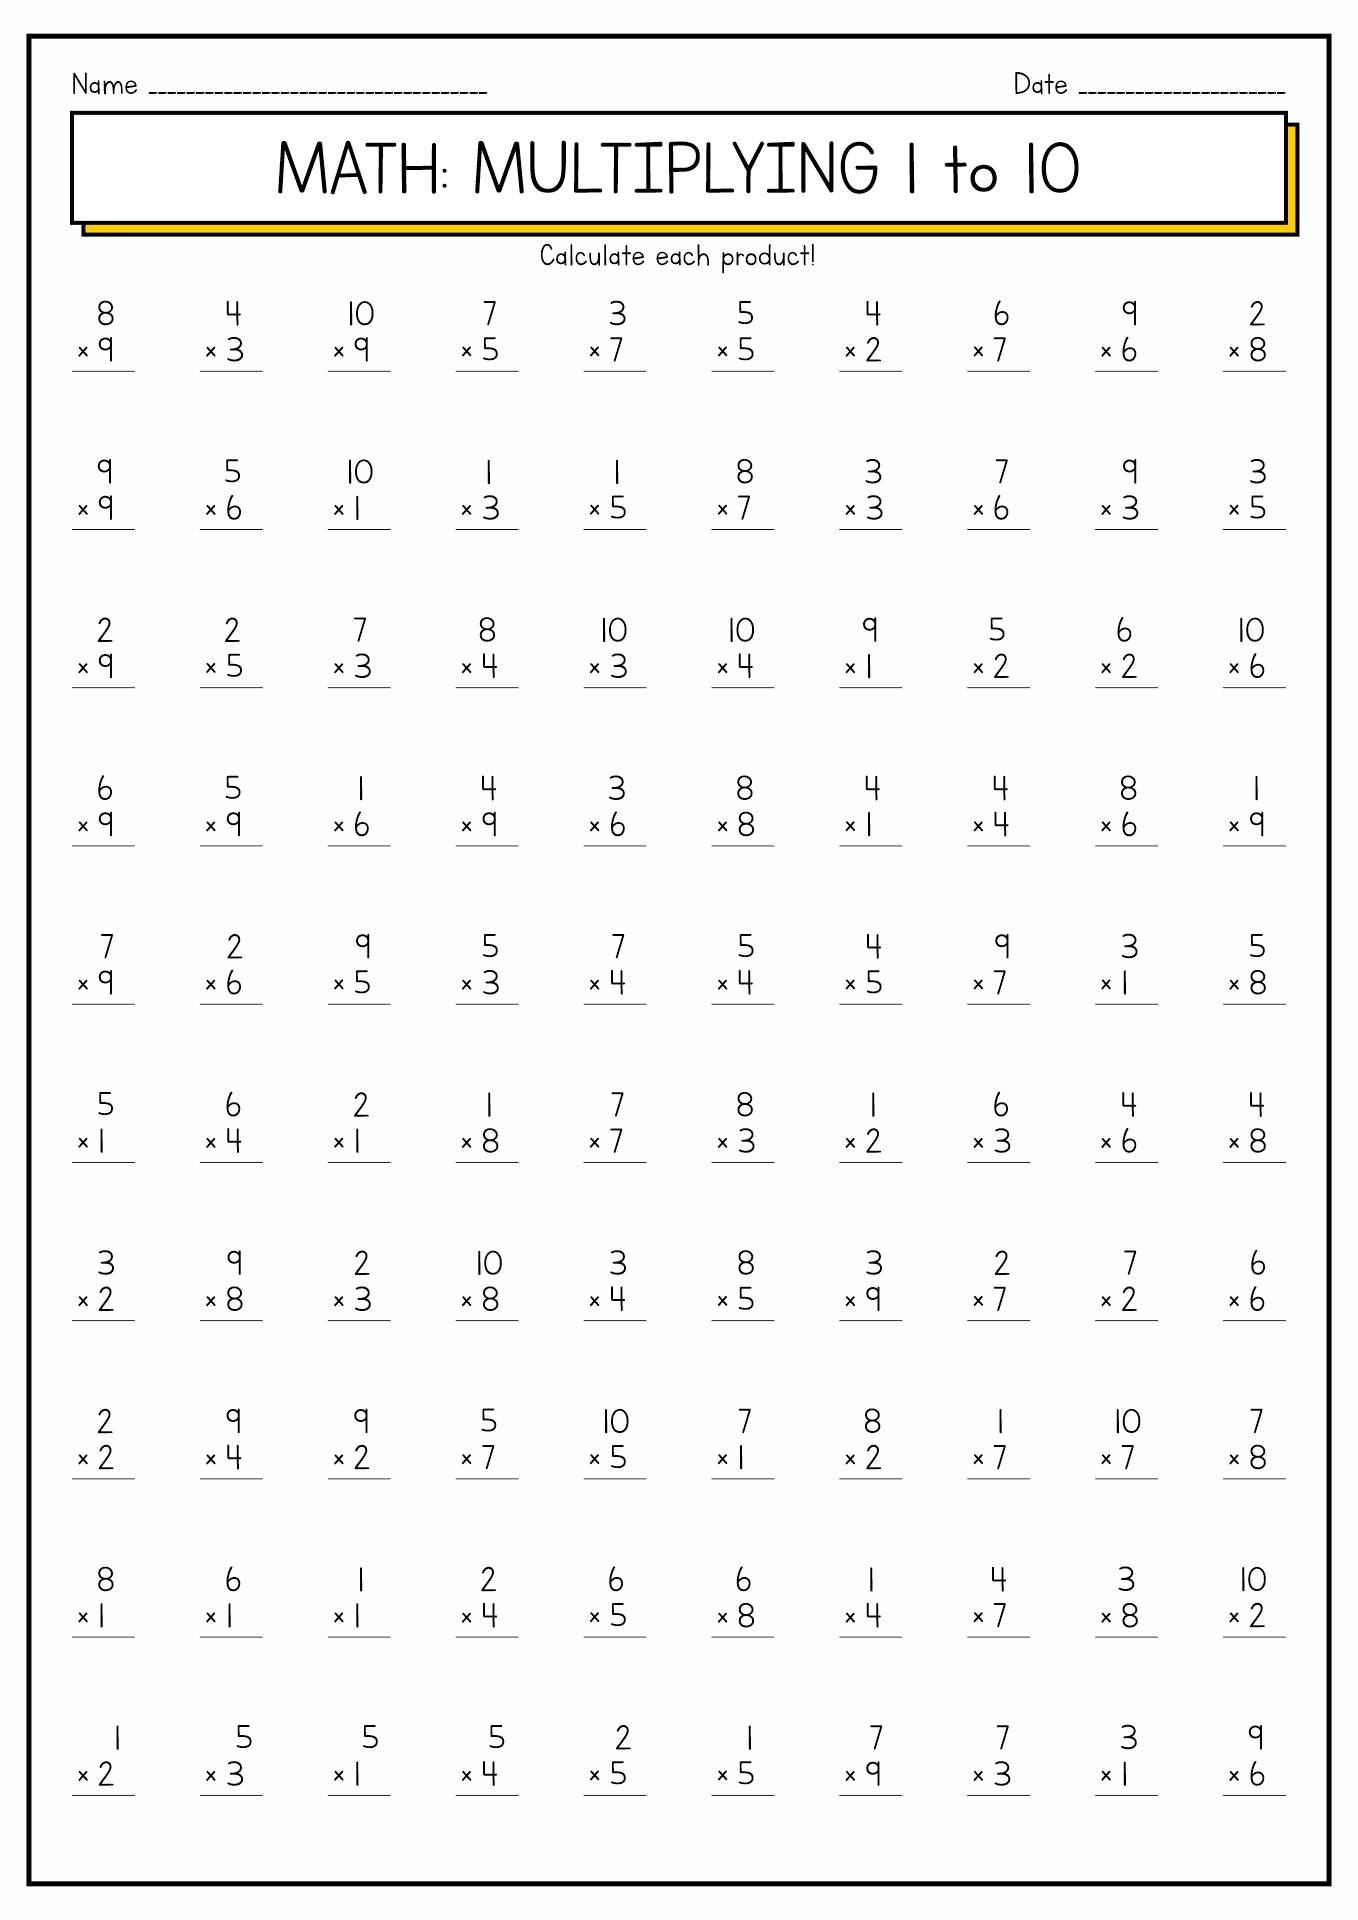 10 Best Images Of Multiplication Worksheets 1 12 Multiplication Worksheets 1 10 100 Division 